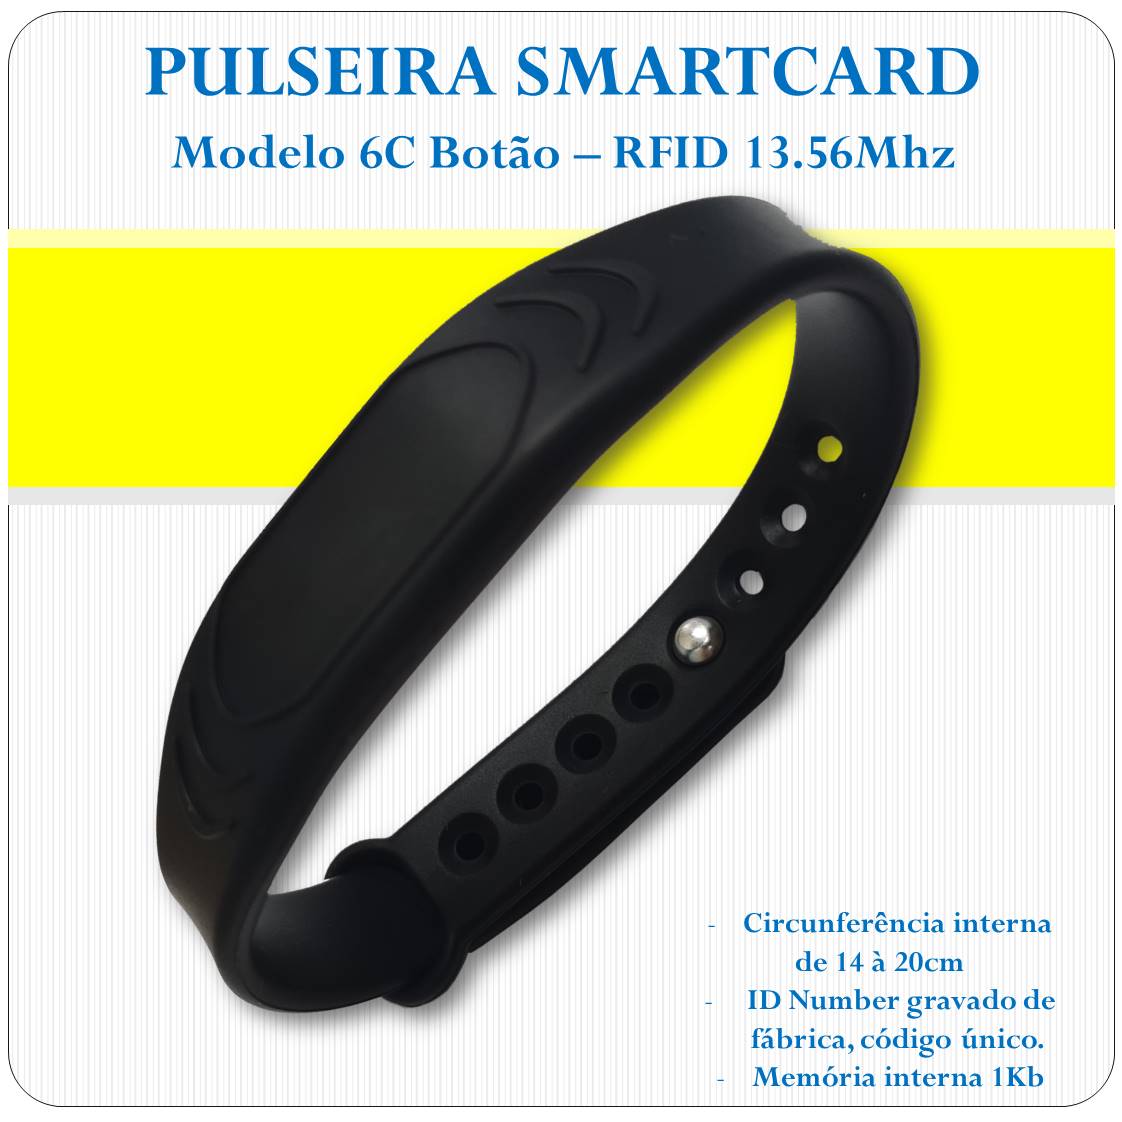 Pulseira RFID Smart Card 13.56 Mhz - Botão - 6C